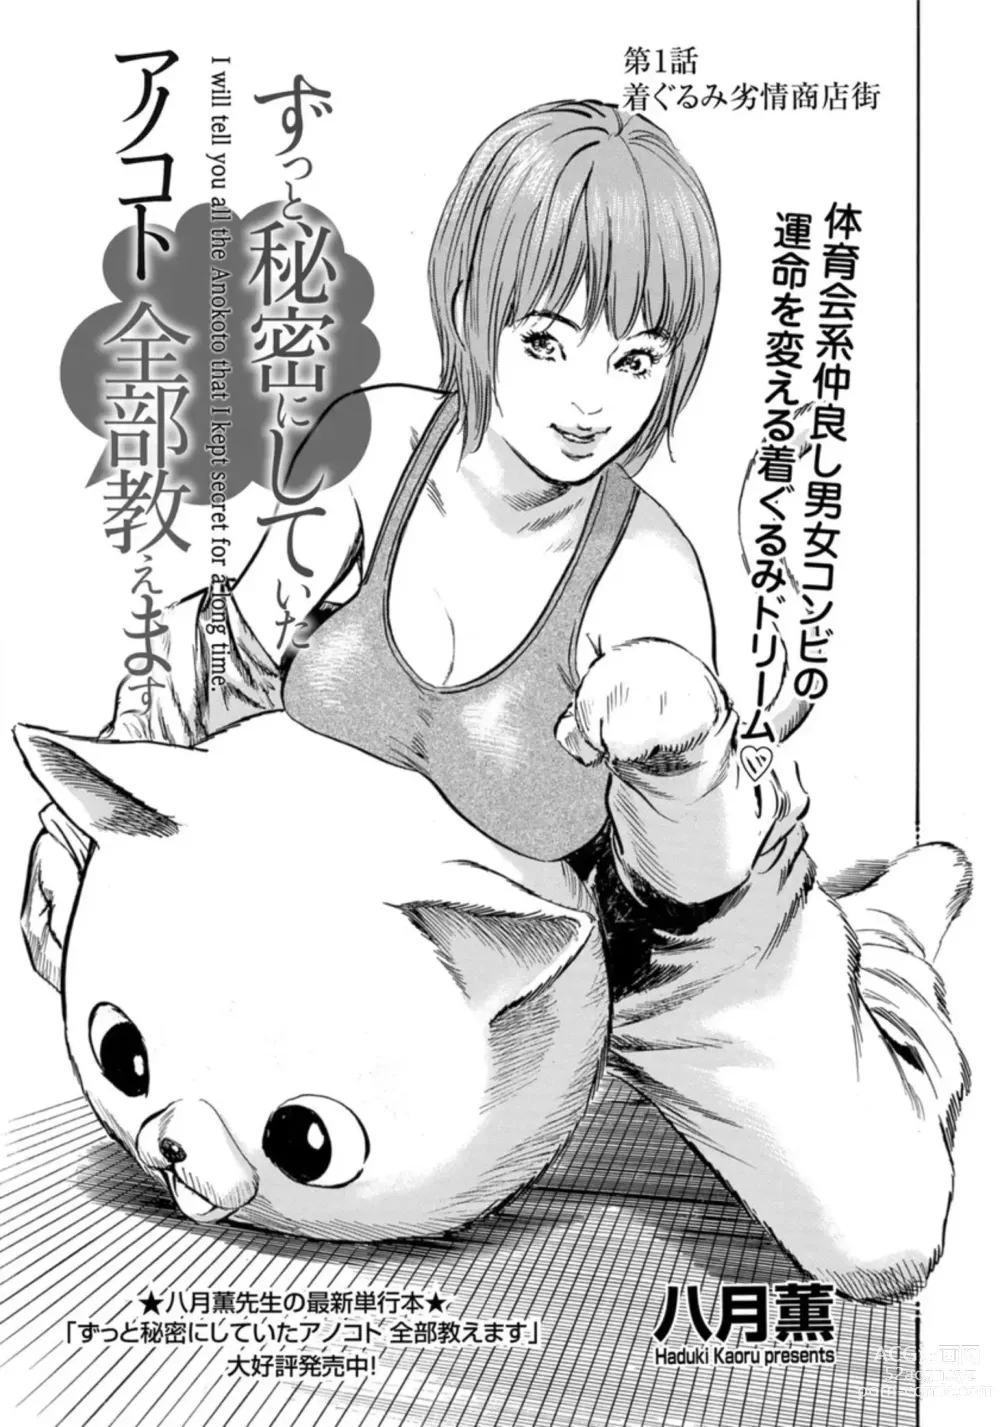 Page 2 of manga Zutto Himitsu ni Shiteita Ano Koto Zenbu Oshiemasu 14 episodes